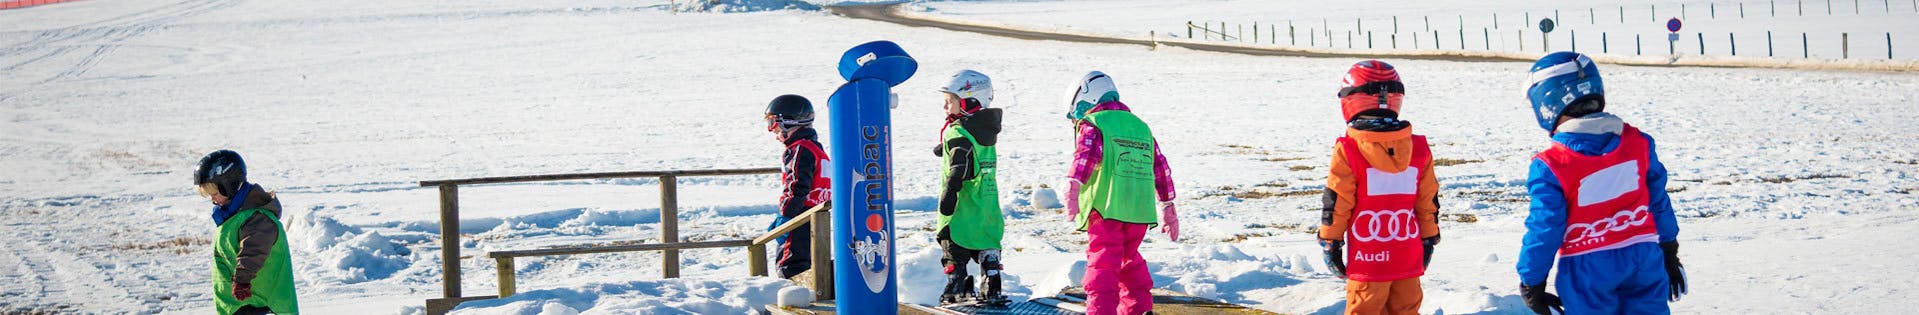 Kinder am Zauberteppich bei dem Kinder-Skikurs (4-10 J.) mit Erfahrung mit Skischule Snow & Bike Factory Willingen.